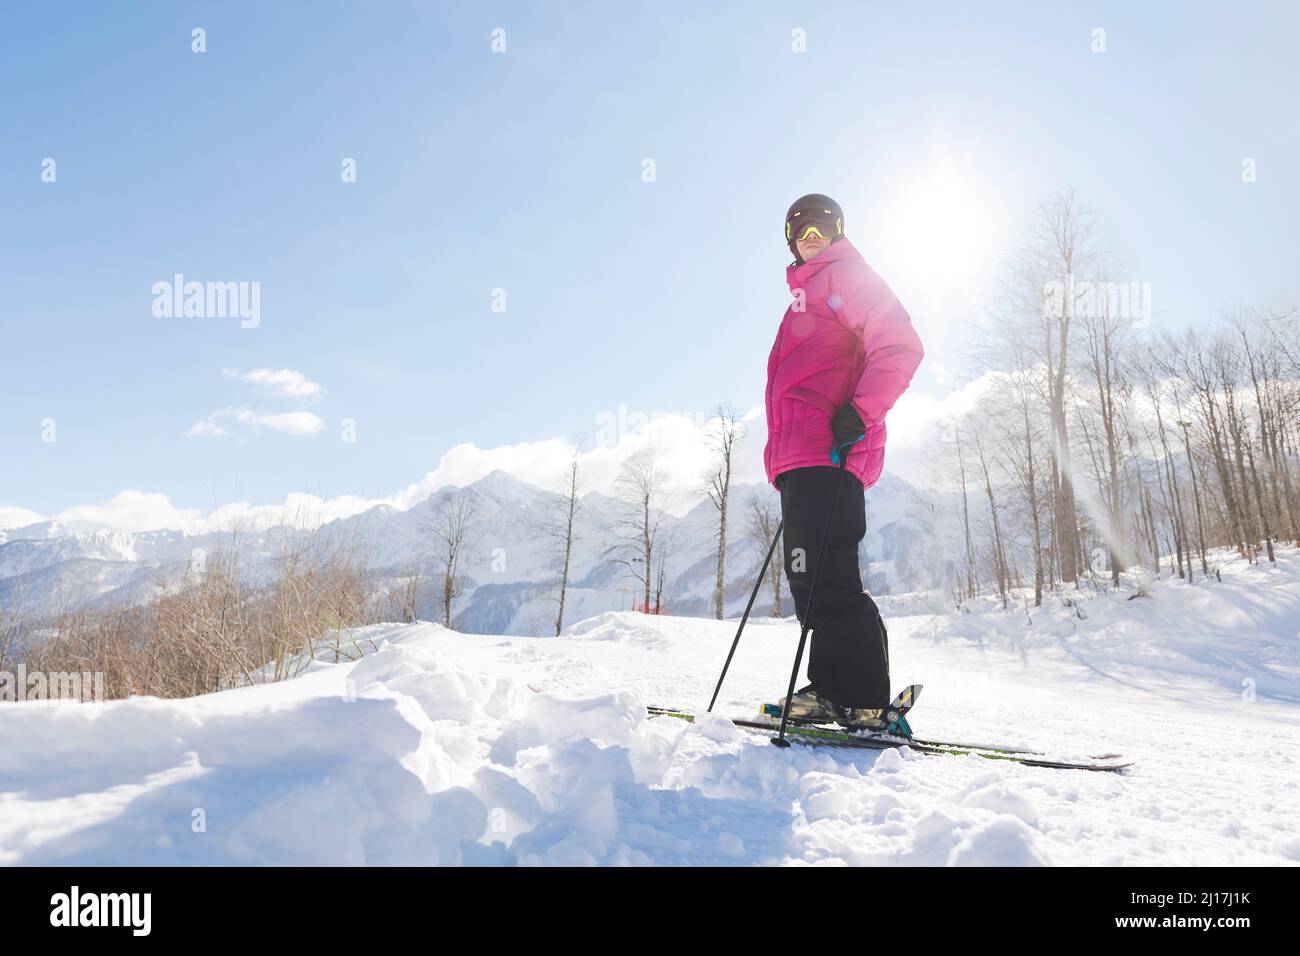 Homme dans des vêtements chauds debout avec des skis sur la neige en hiver Banque D'Images